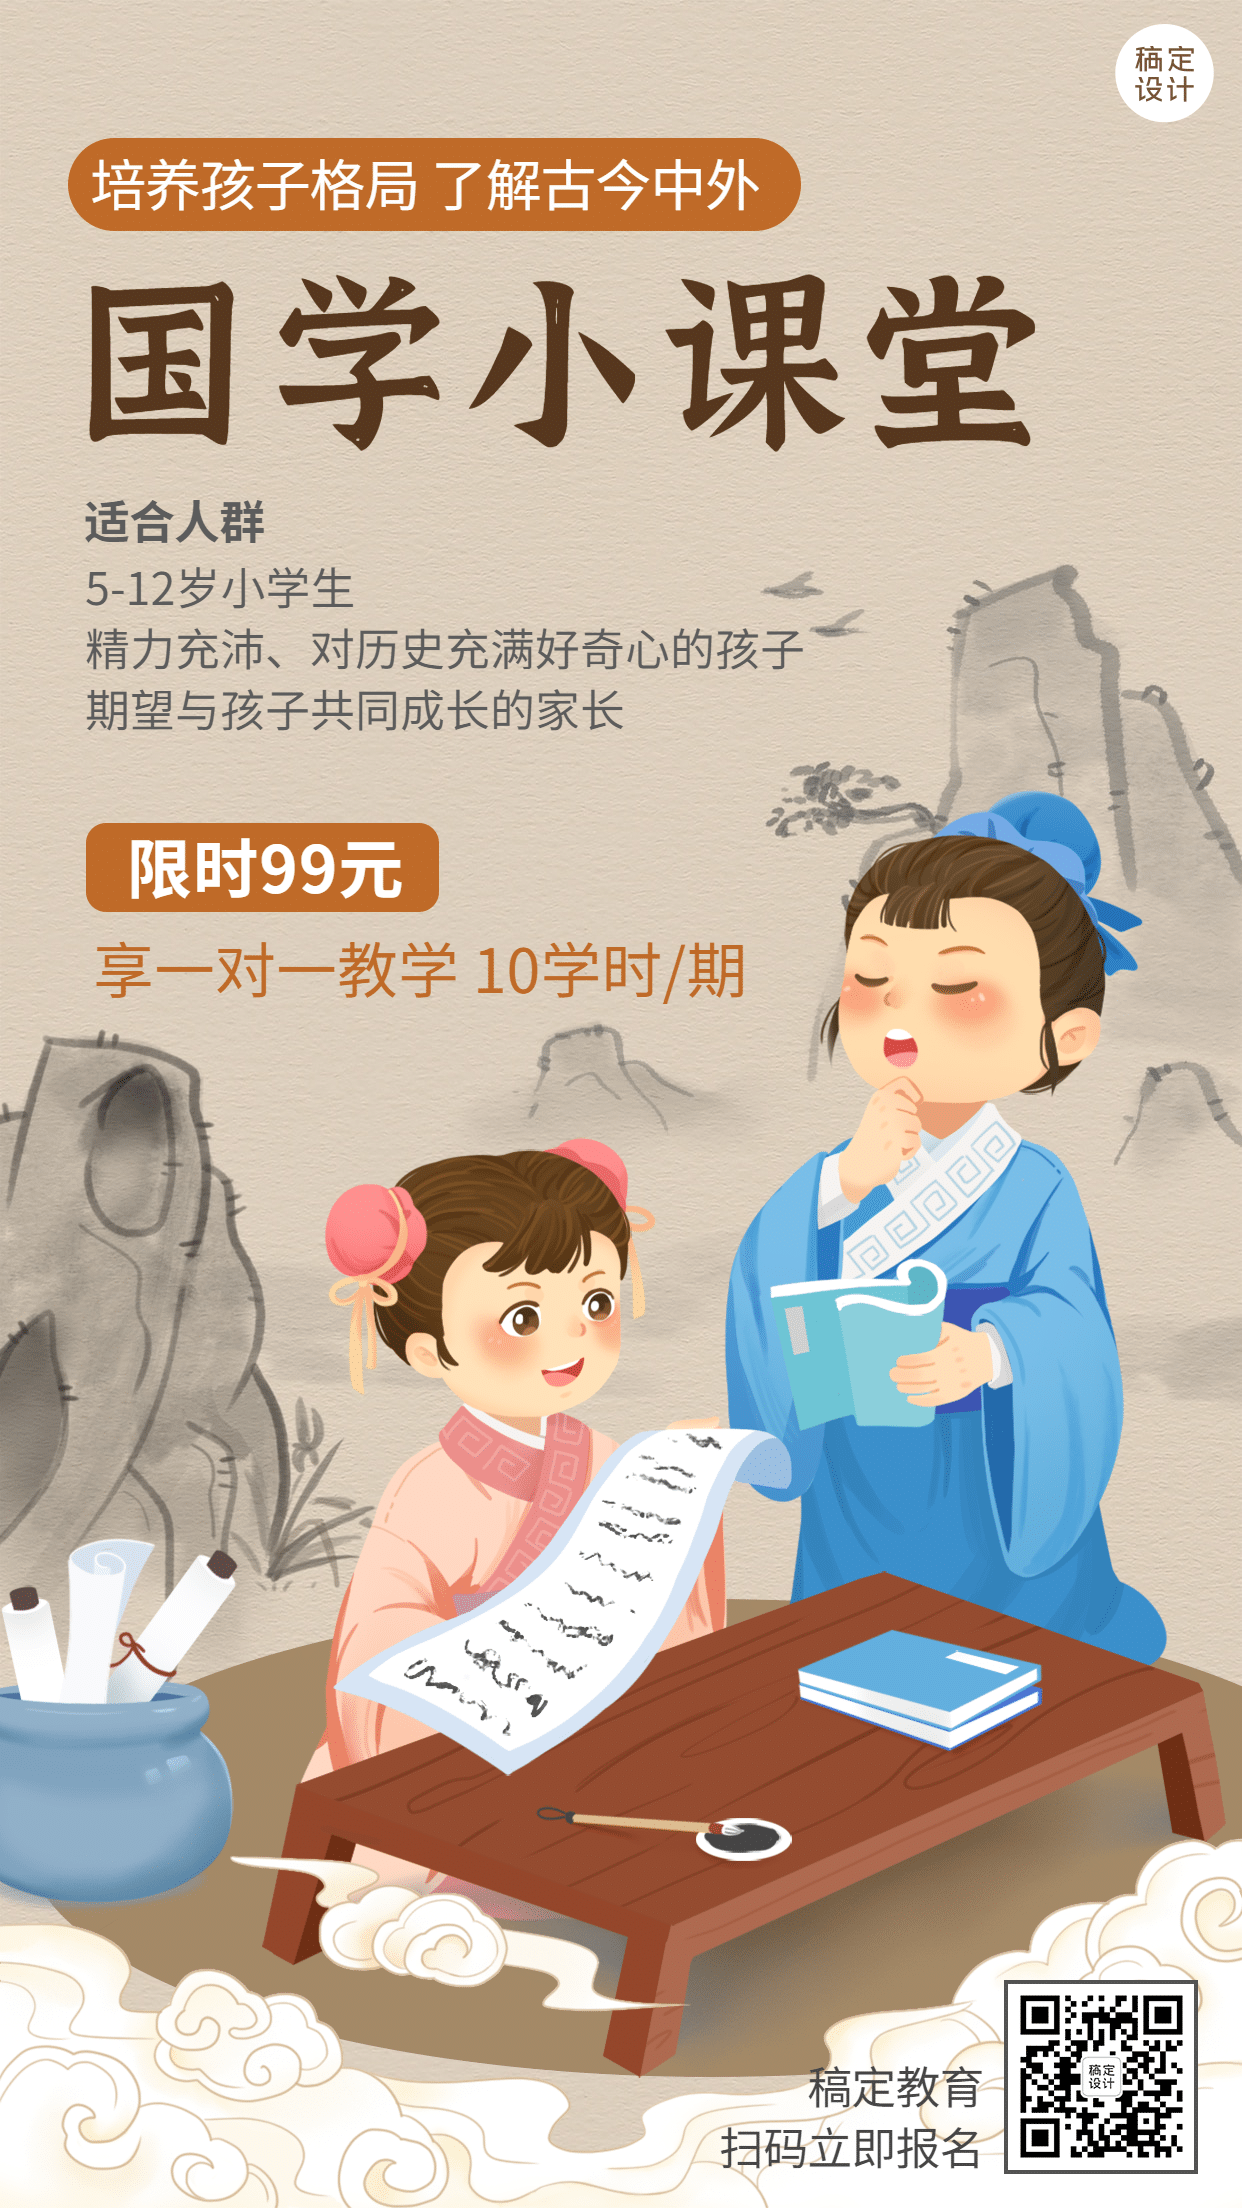 早幼教中国风国学课堂课程招生手绘竖版海报